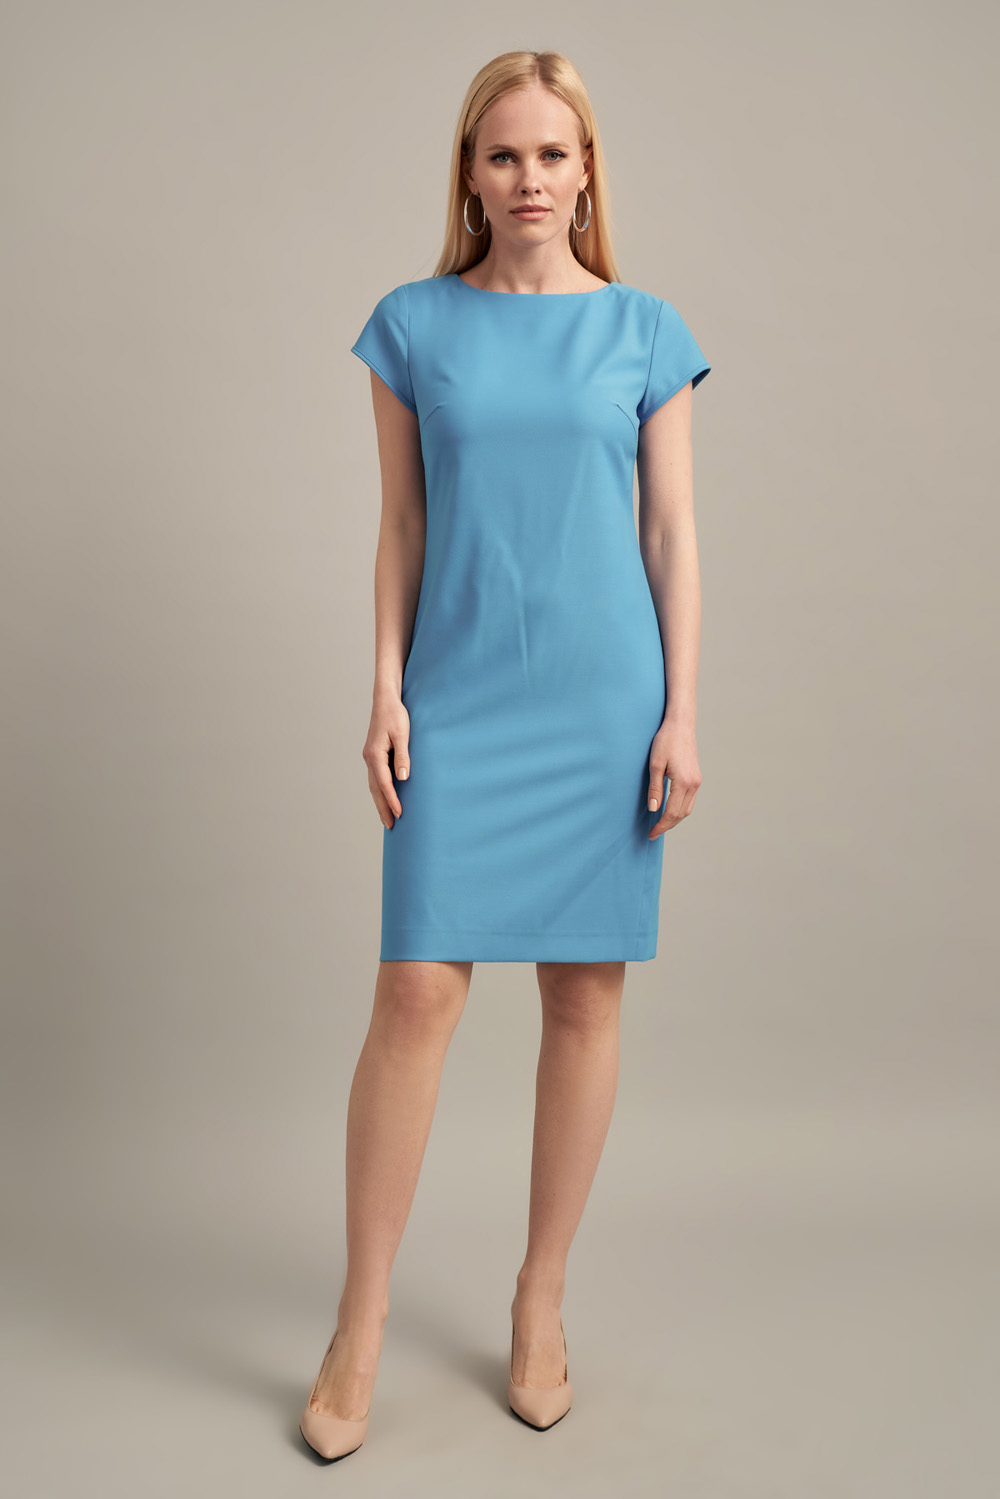 Платье футляр яркого-голубого цвета с коротким рукавом